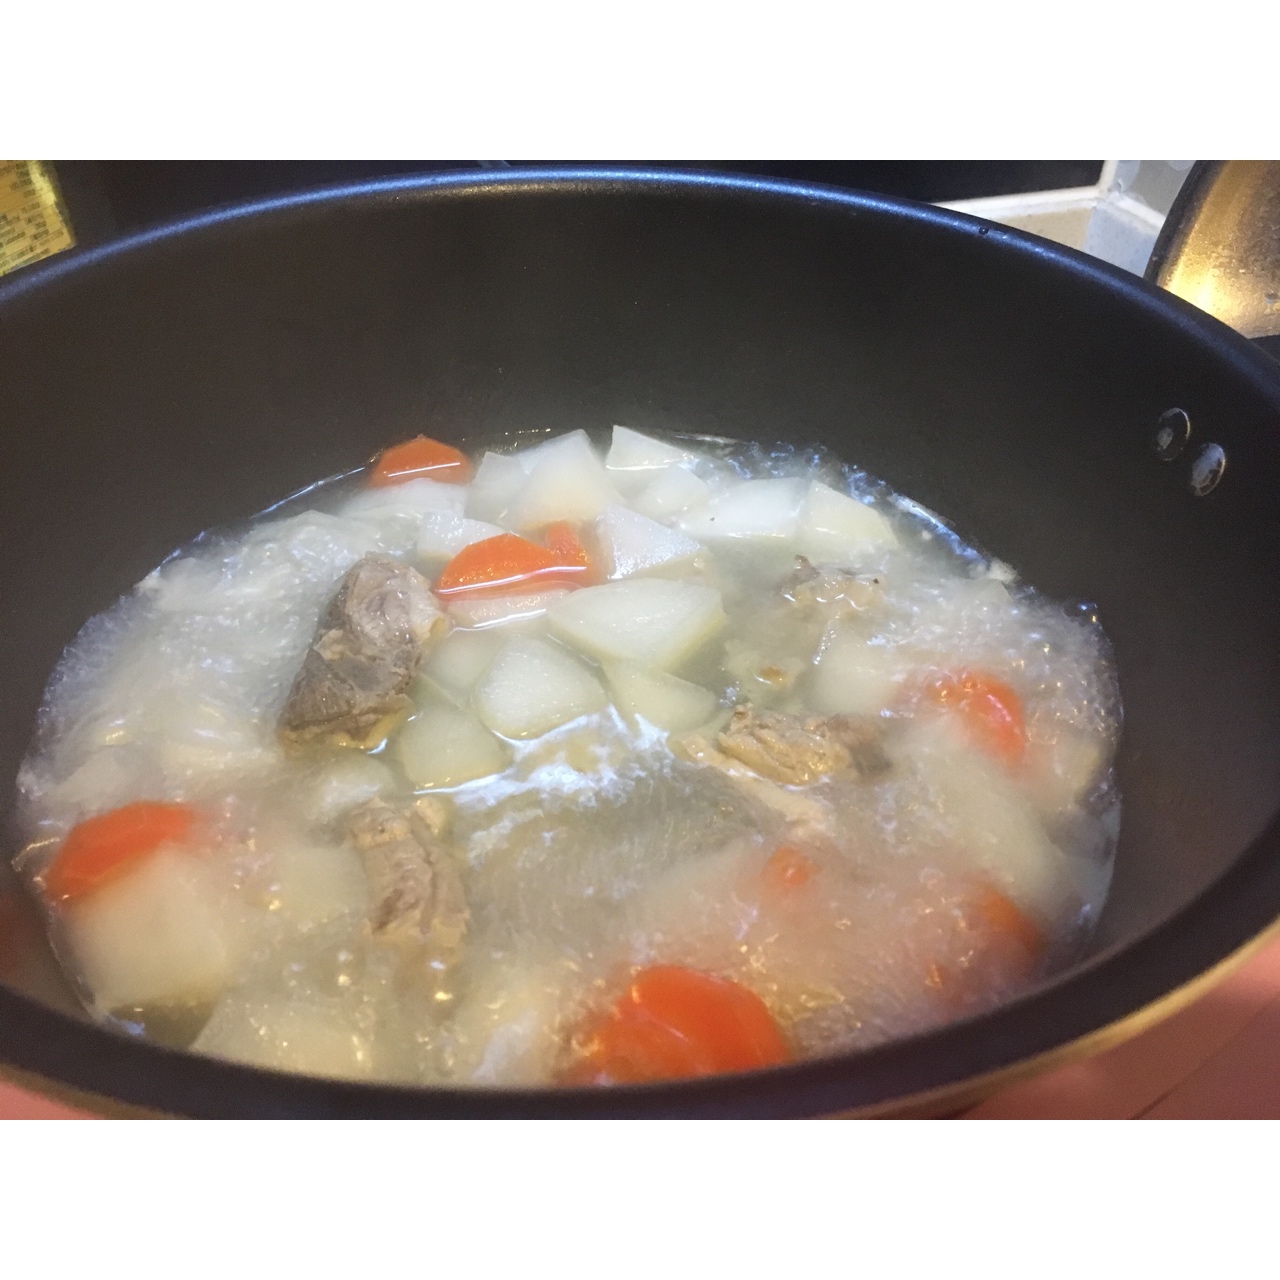 萝卜排骨汤